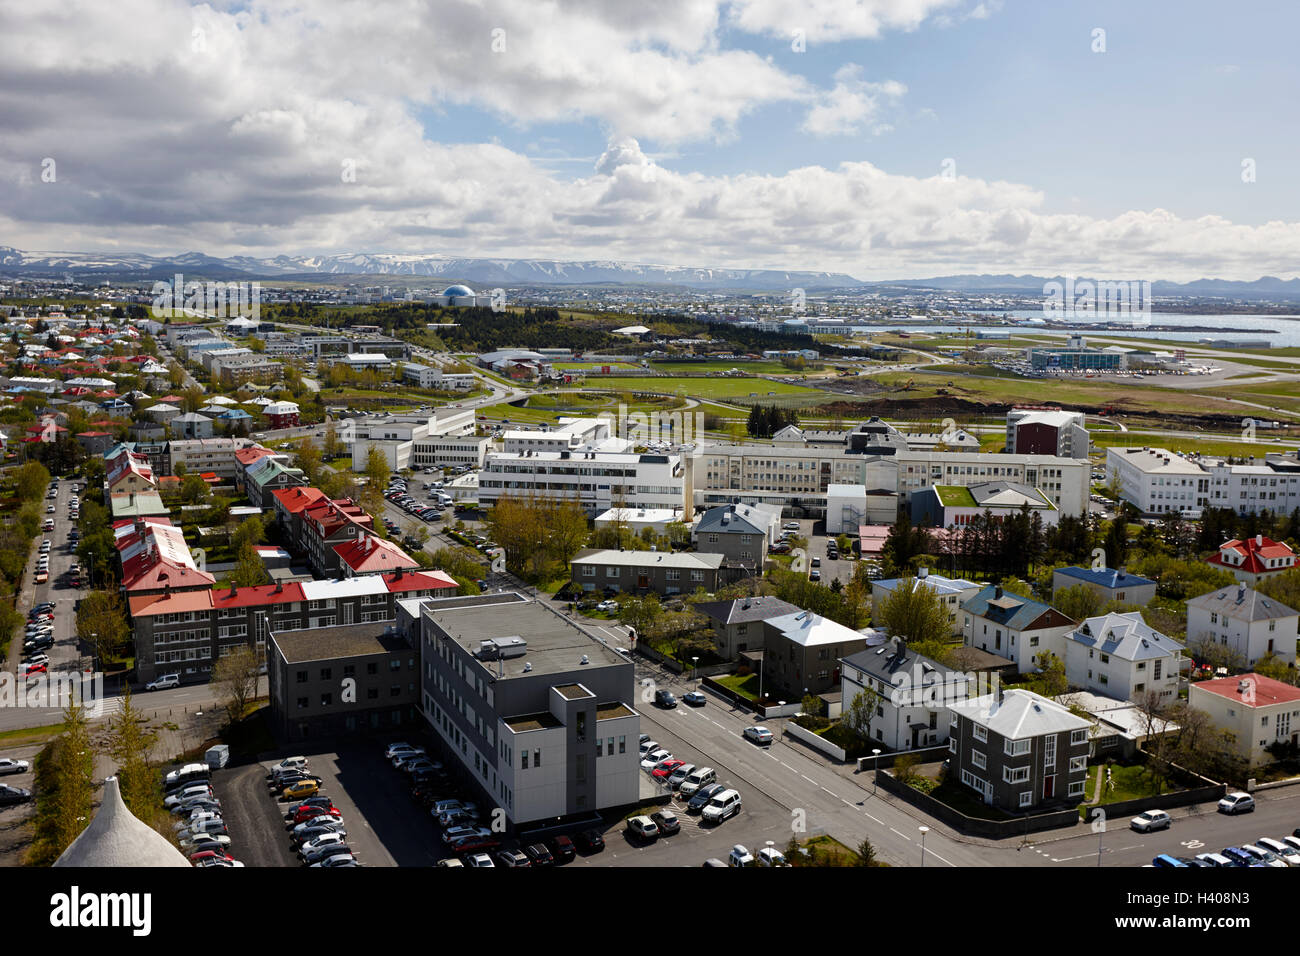 Vue aérienne sur l'extrémité sud de la ville et l'hôpital universitaire de Reykjavik Islande Banque D'Images